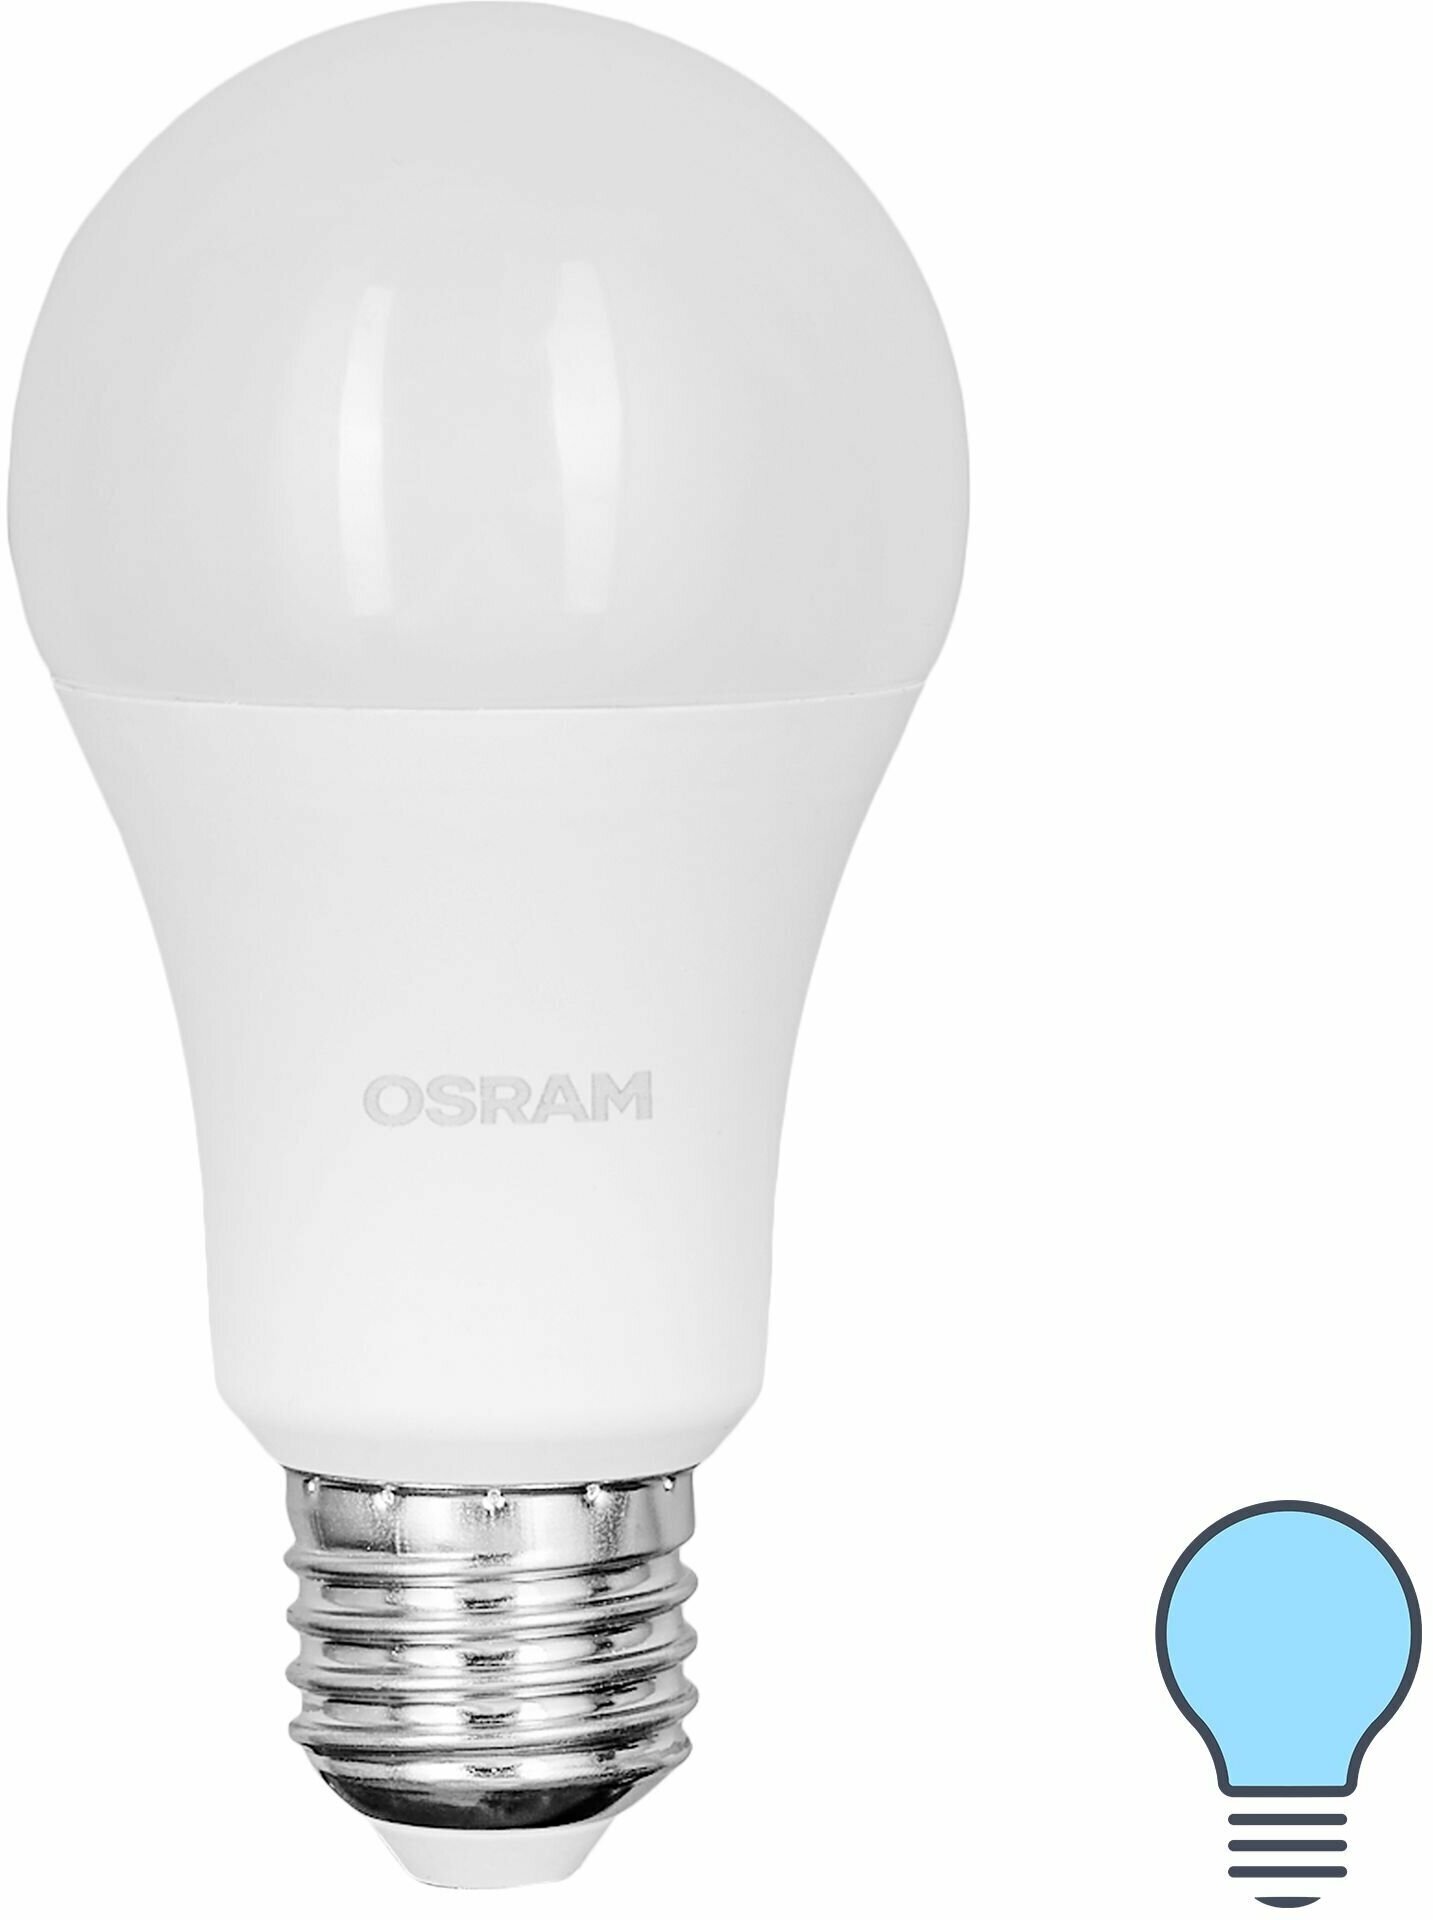 Лампа светодиодная Osram груша 12Вт 1055Лм E27 холодный белый свет